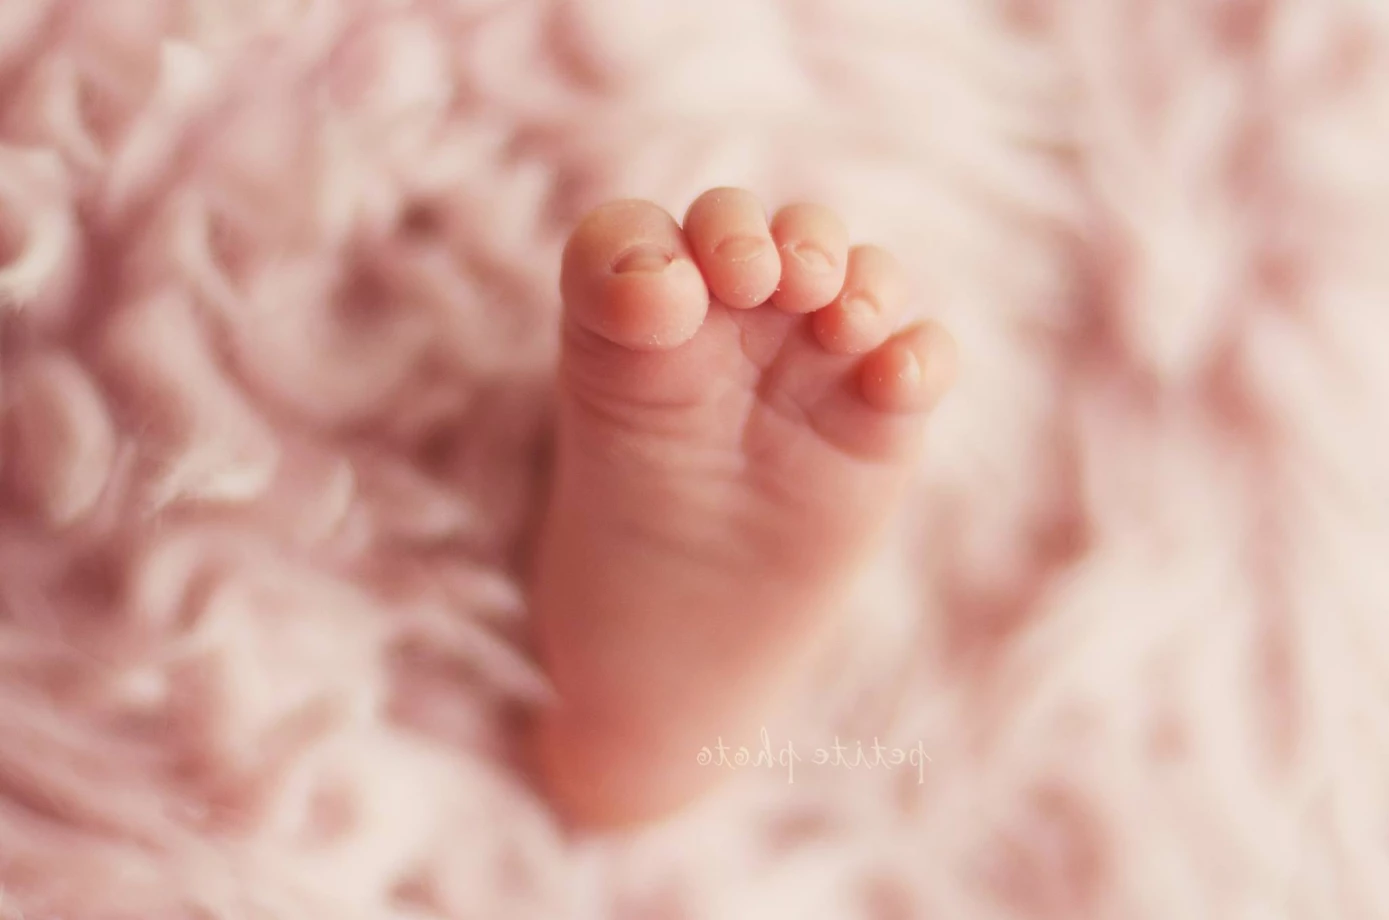 zdjęcia gdynia fotograf agnieszka-drozdz portfolio zdjecia noworodkow sesje noworodkowe niemowlę